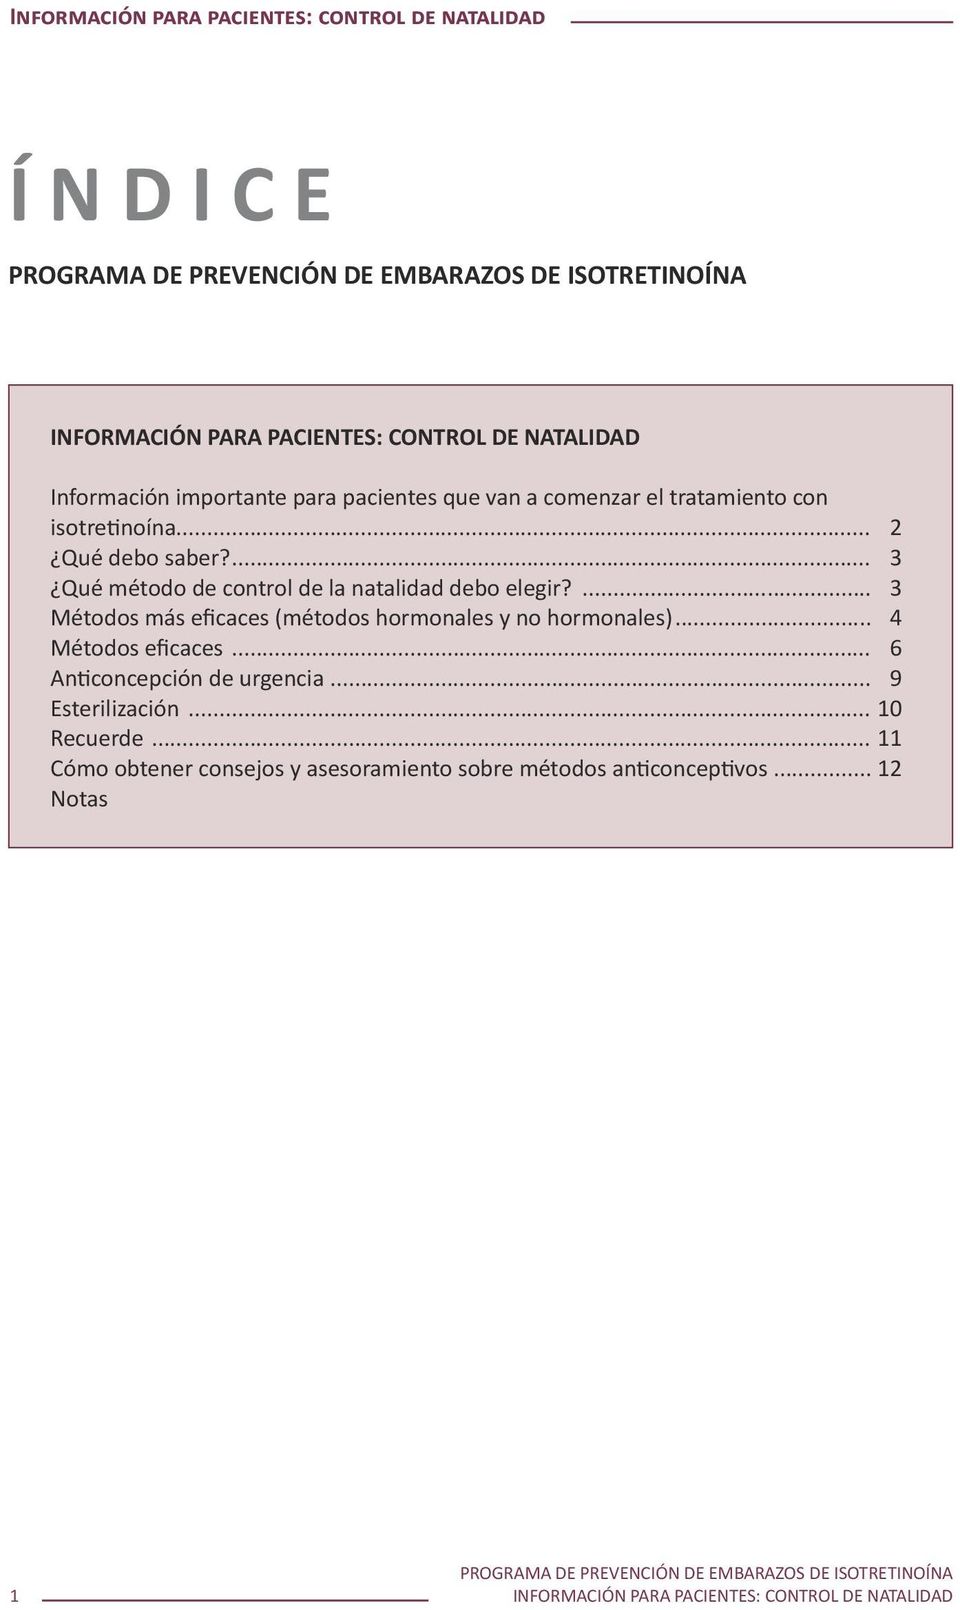 ... 3 Métodos más eficaces (métodos hormonales y no hormonales)... 4 Métodos eficaces... 6 Anticoncepción de urgencia.